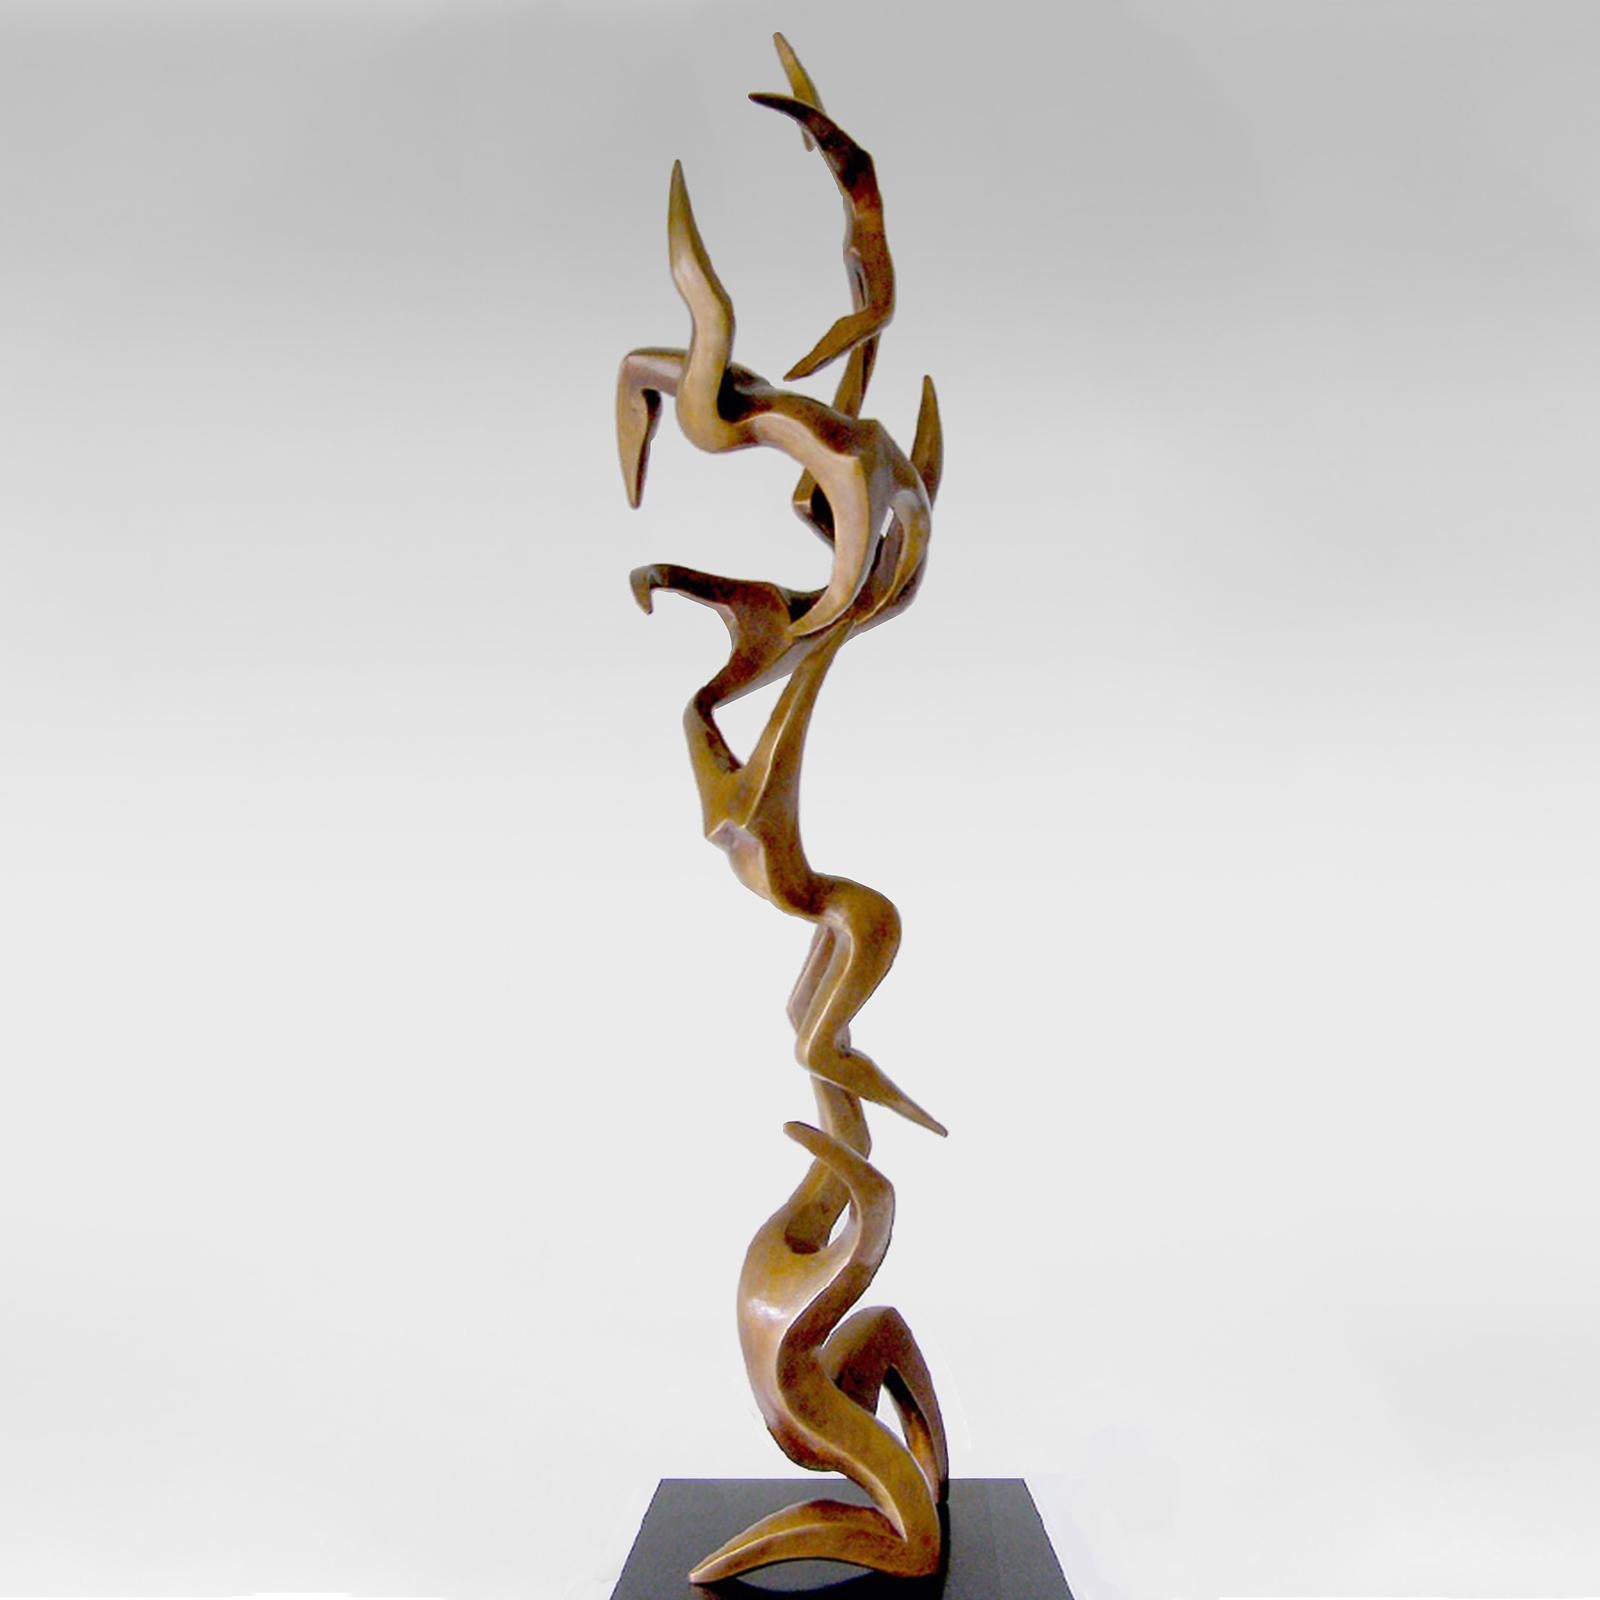 Flug , Zeitgenössische Bronze-Skulptur – Sculpture von Michael Vaynman